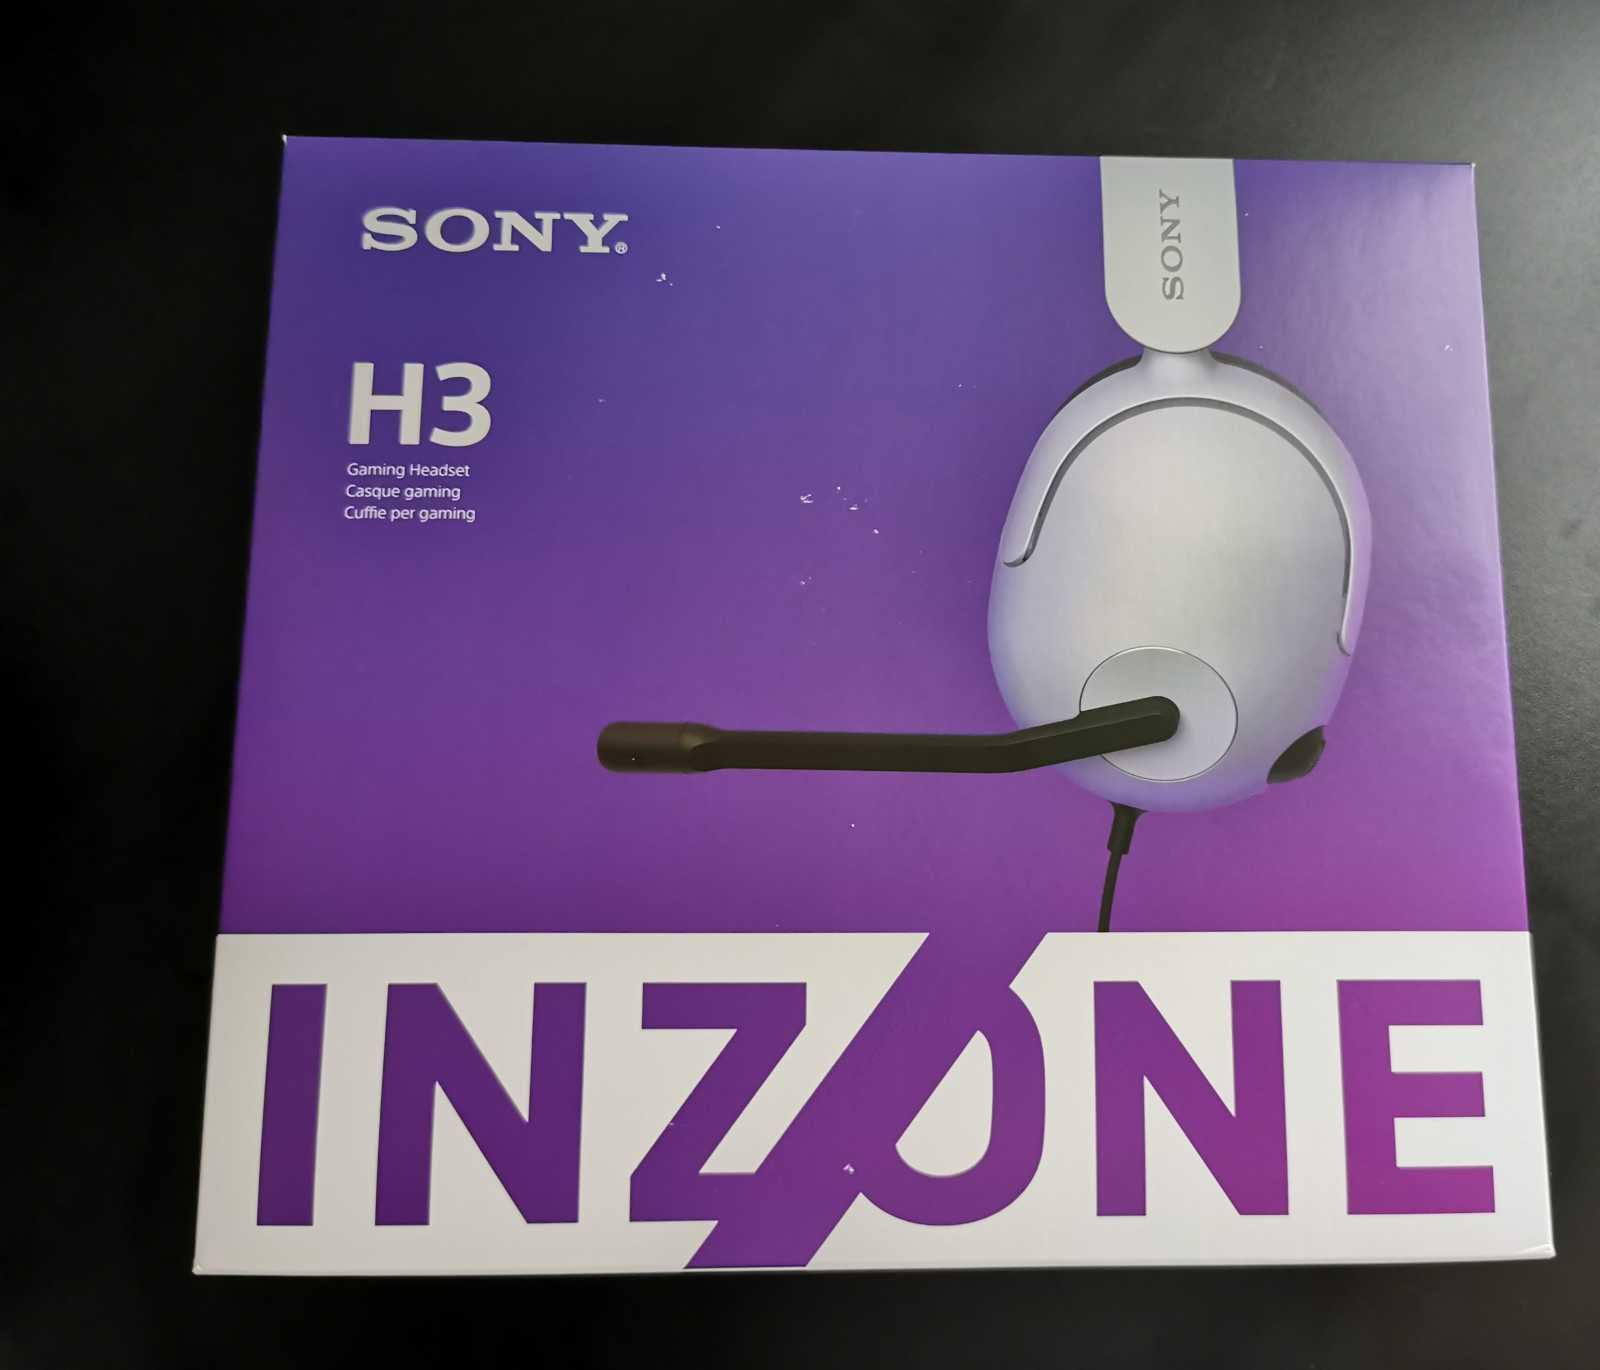 Exkluzivní recenze nových produktů Sony Inzone - testujeme sluchátka H3, H7 a H9 společně s monitorem M9 nové herní divize Sony